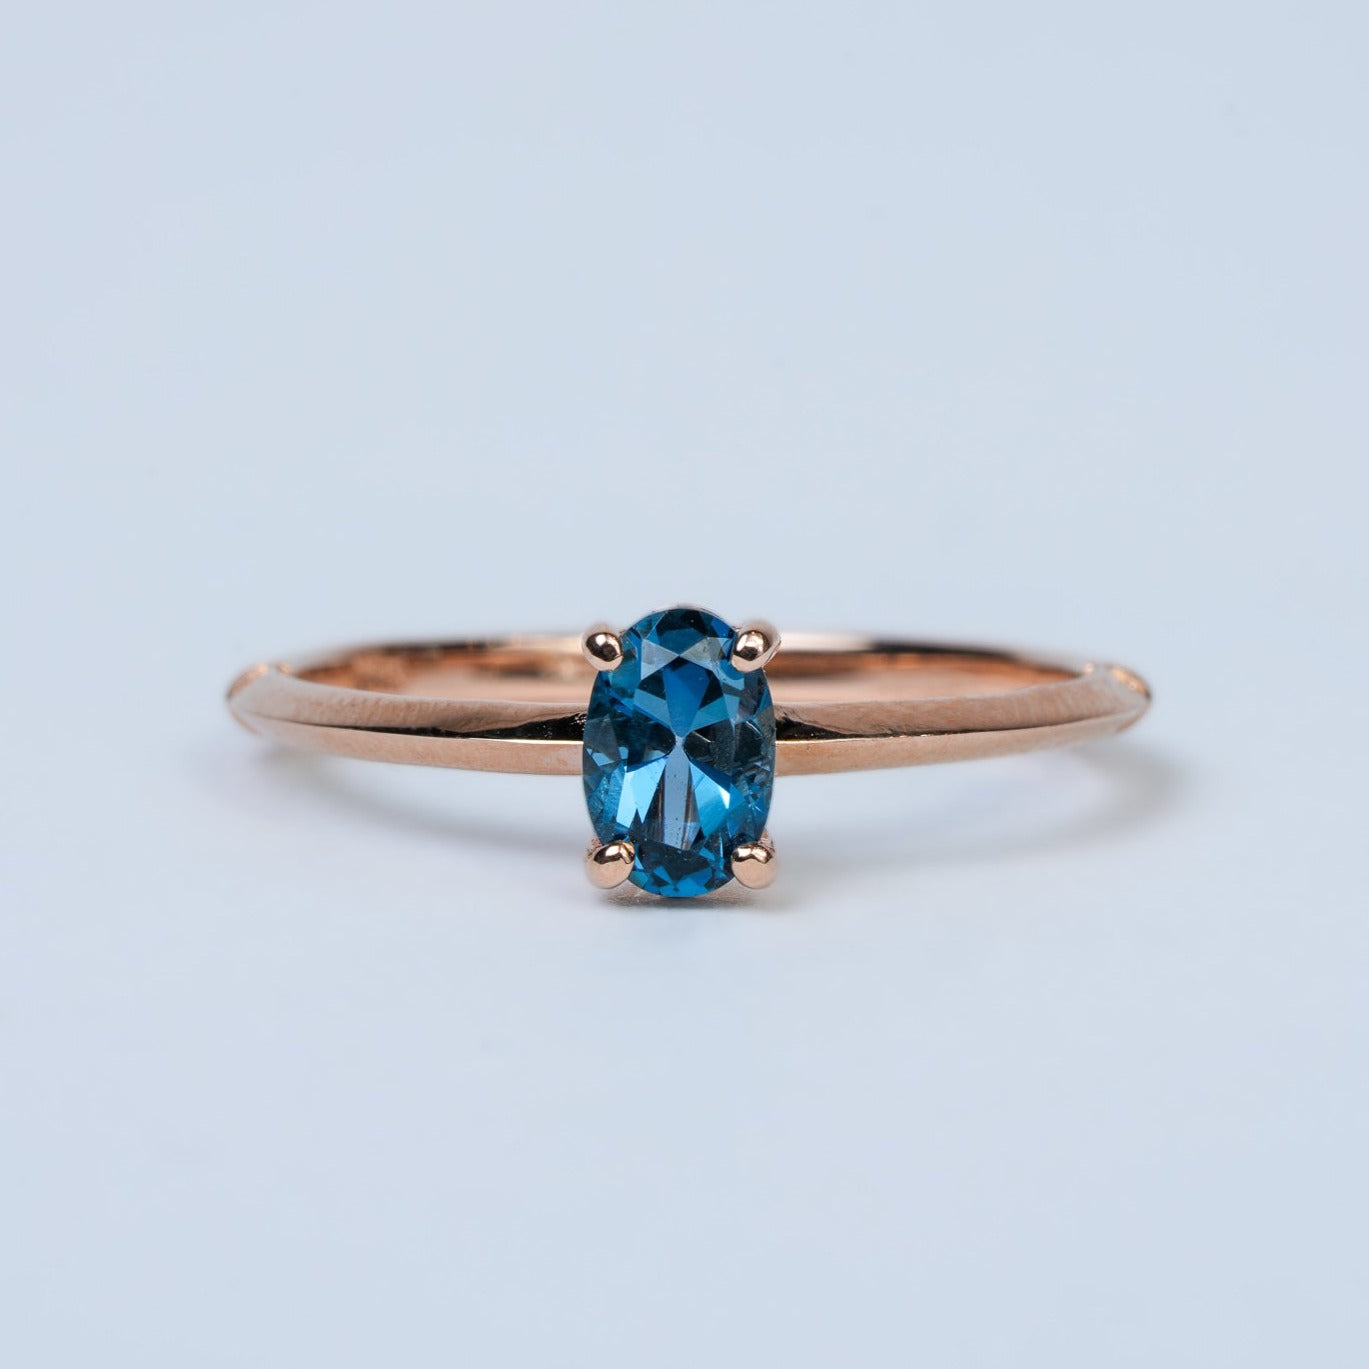 June's London Blue Topaz Ring